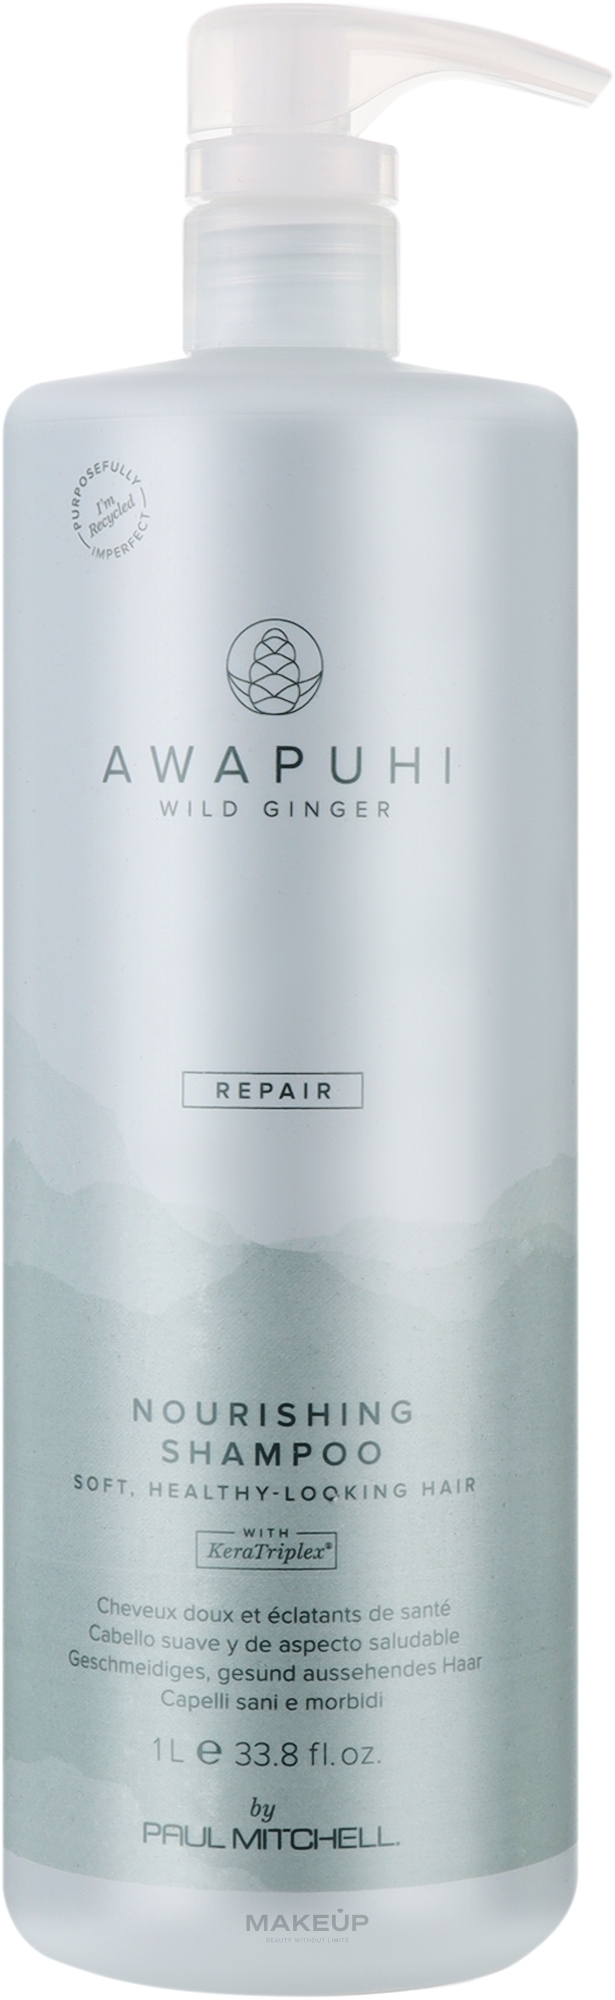 Питательный шампунь для волос - Paul Mitchell Awapuhi Wild Ginger Nourishing Shampoo — фото 1000ml